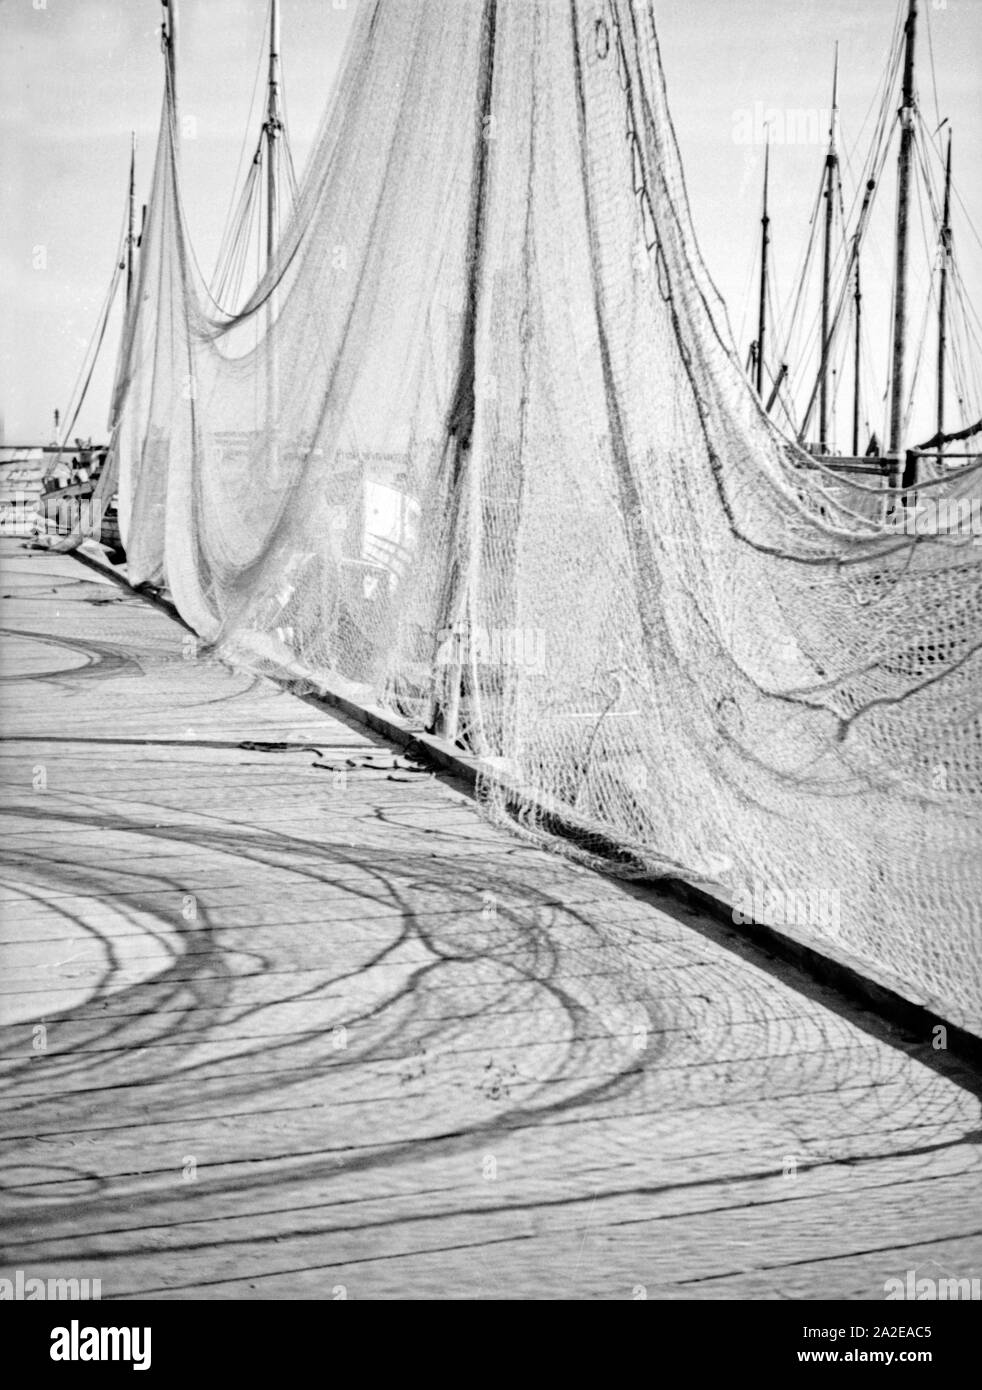 Fischernetze sind am Anlegesteg im Hafen ausgebreitet, Ostpreußen, 1930er Jahr. Fisherman nets at a jetty in a harbor of East Prussia, 1930s. Stock Photo